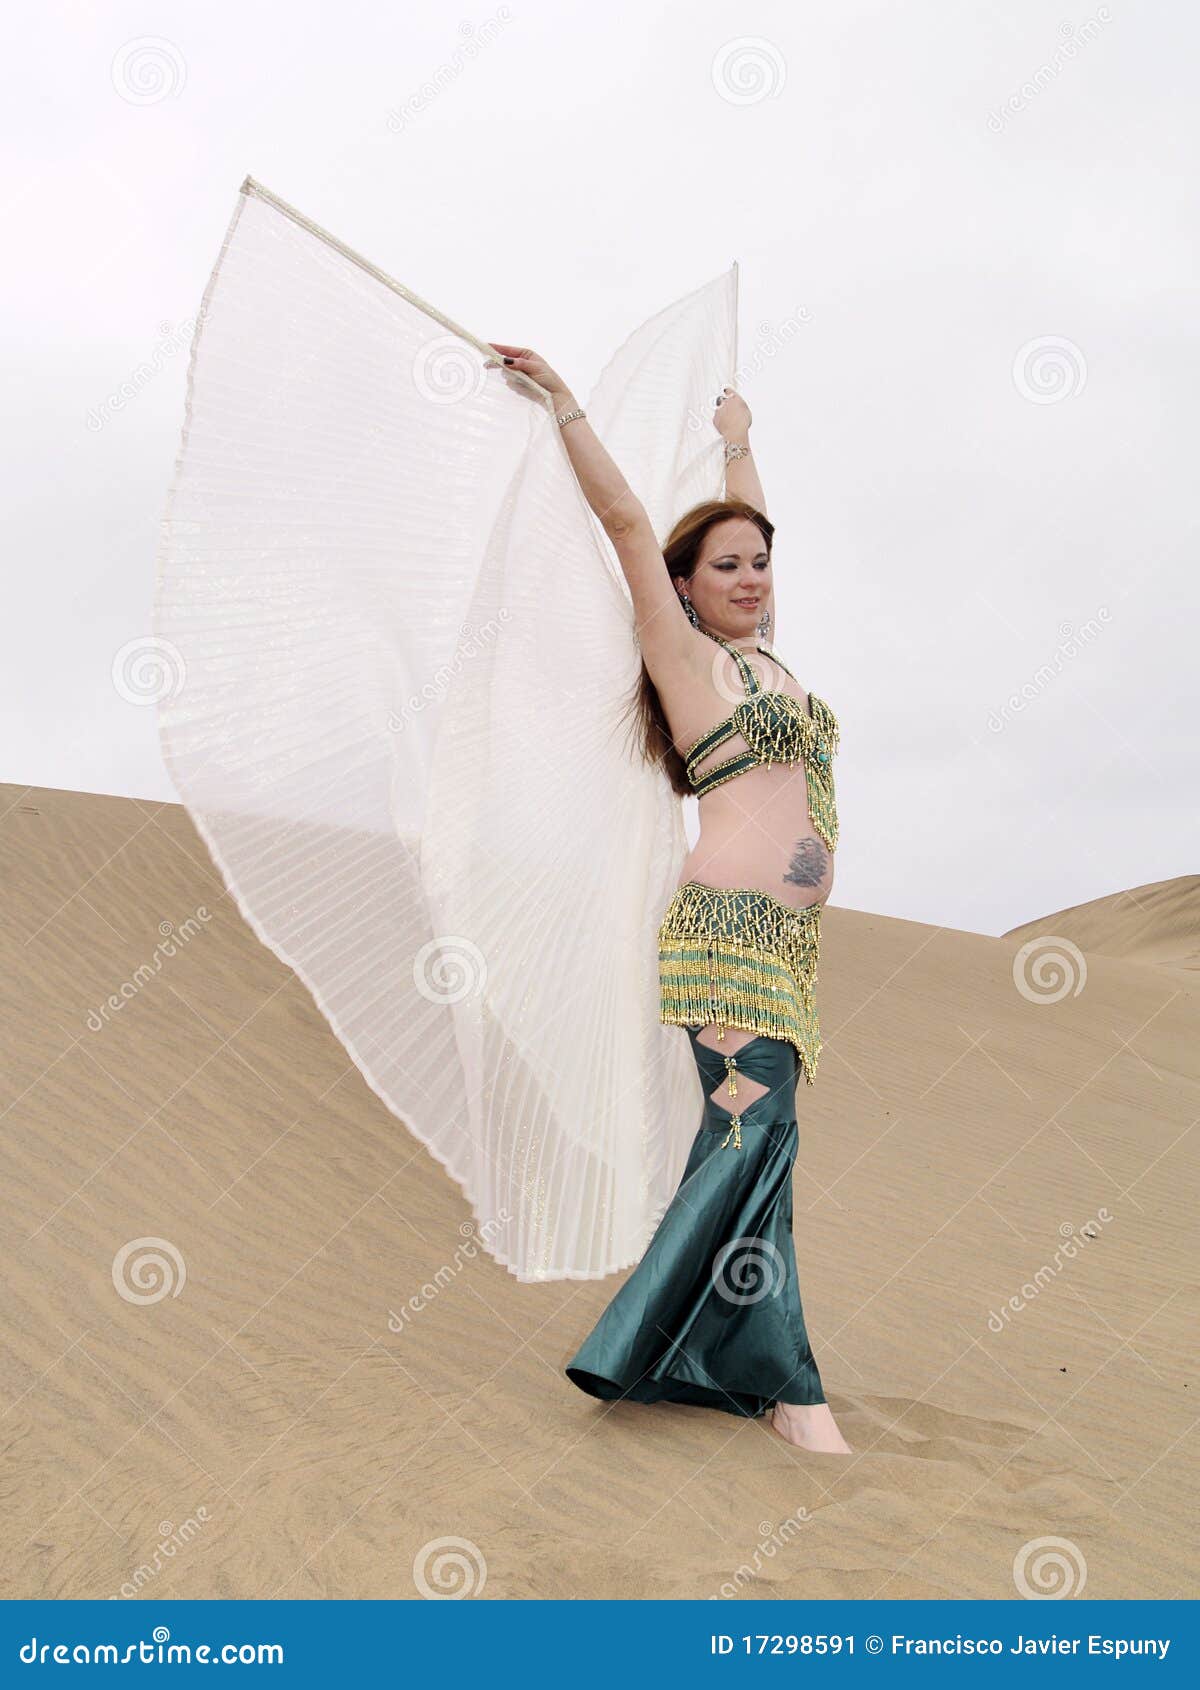 Danzatore arabo al deserto con le ali. Posa del ballo arabo sulla sabbia con le ali